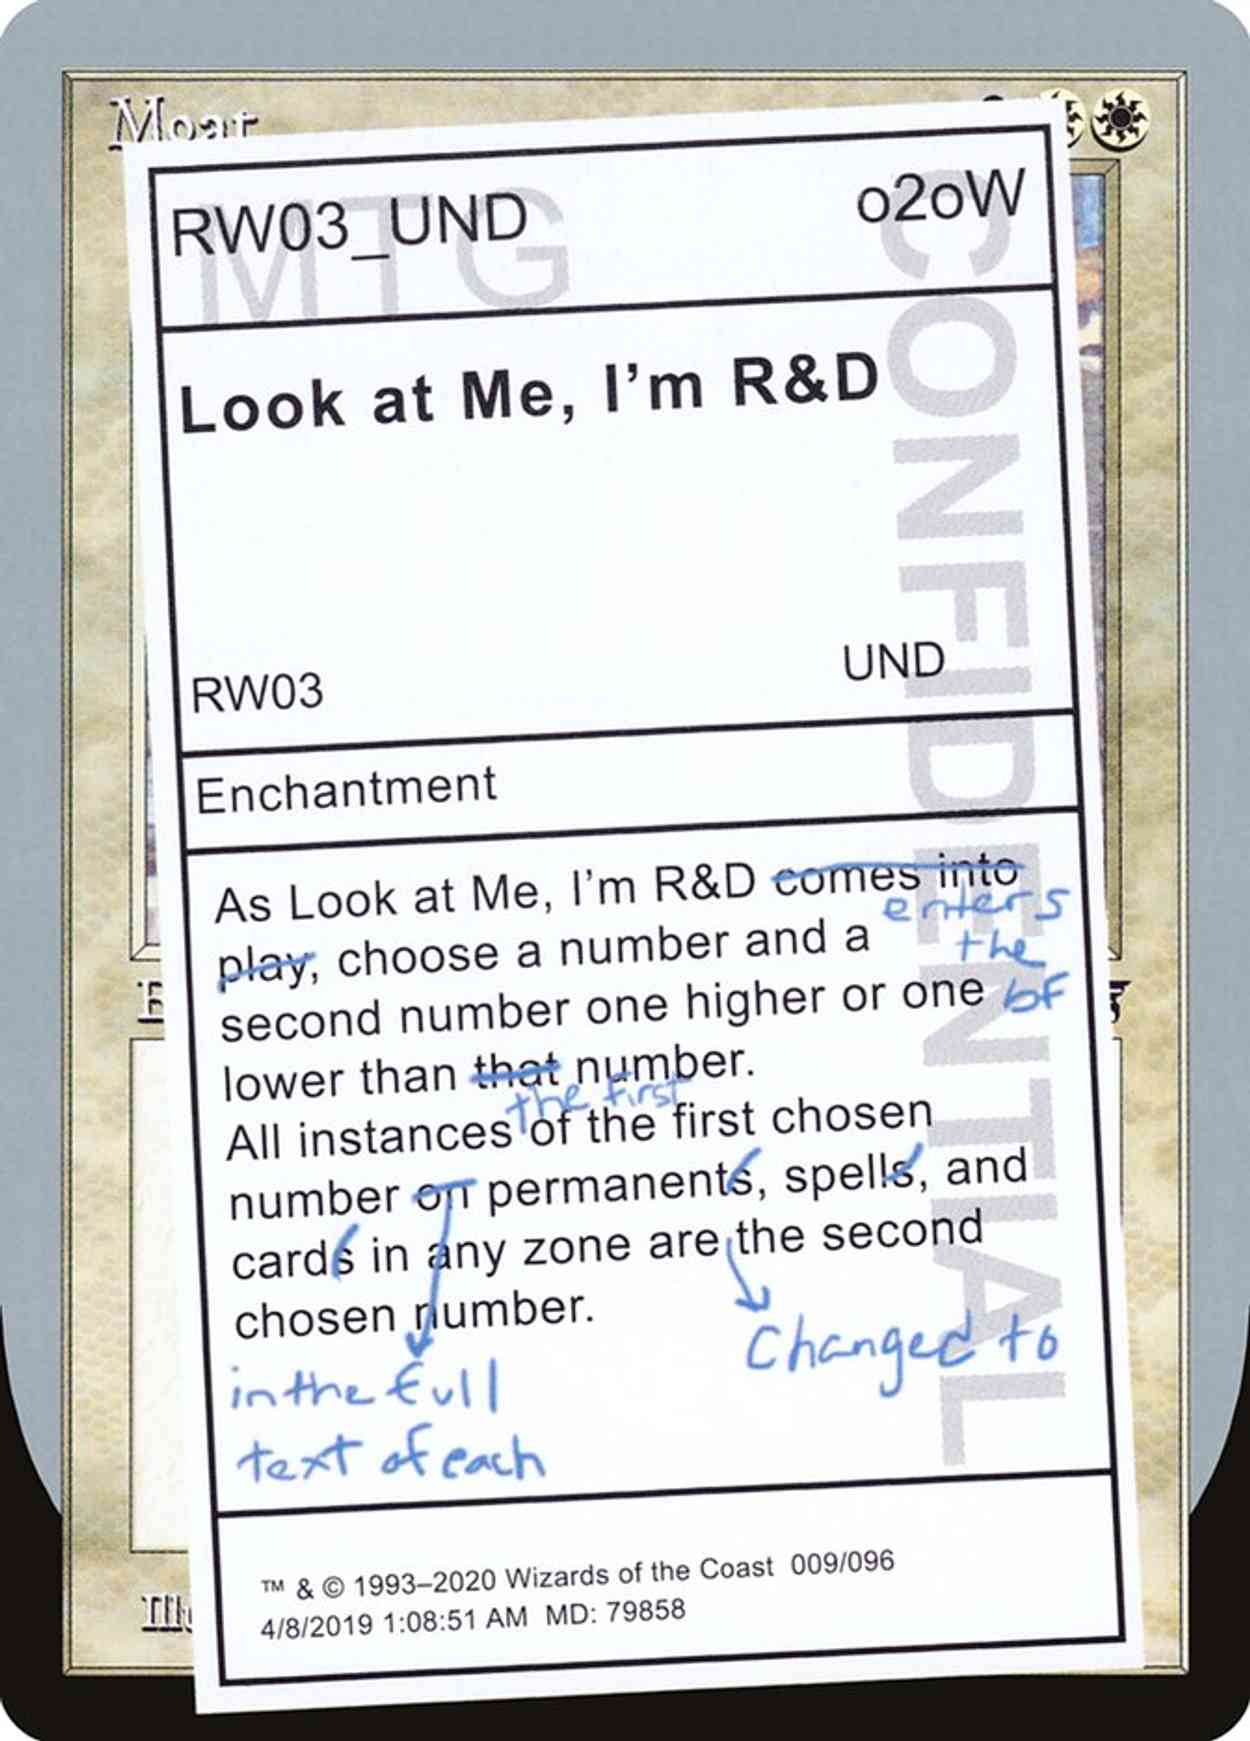 Look at Me, I'm R&D magic card front